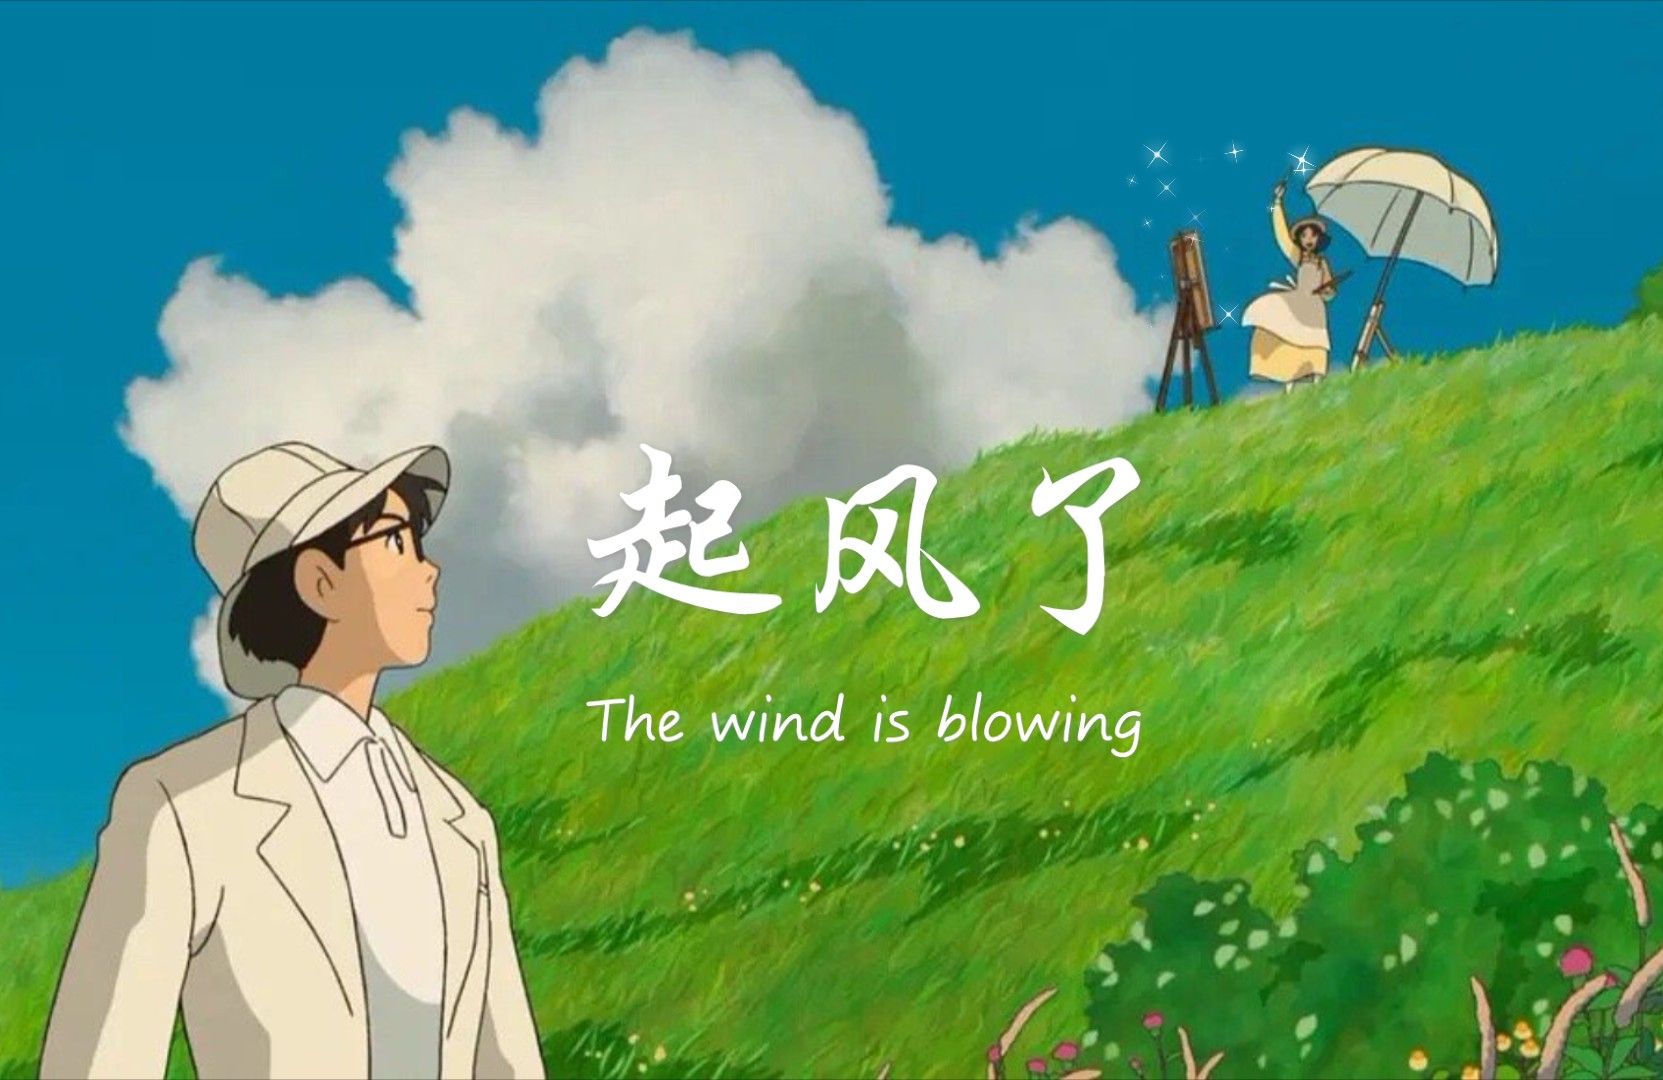 梦想与爱情才刚实现,却被战争与现实摧毁了 宫崎骏经典电影《起风了》